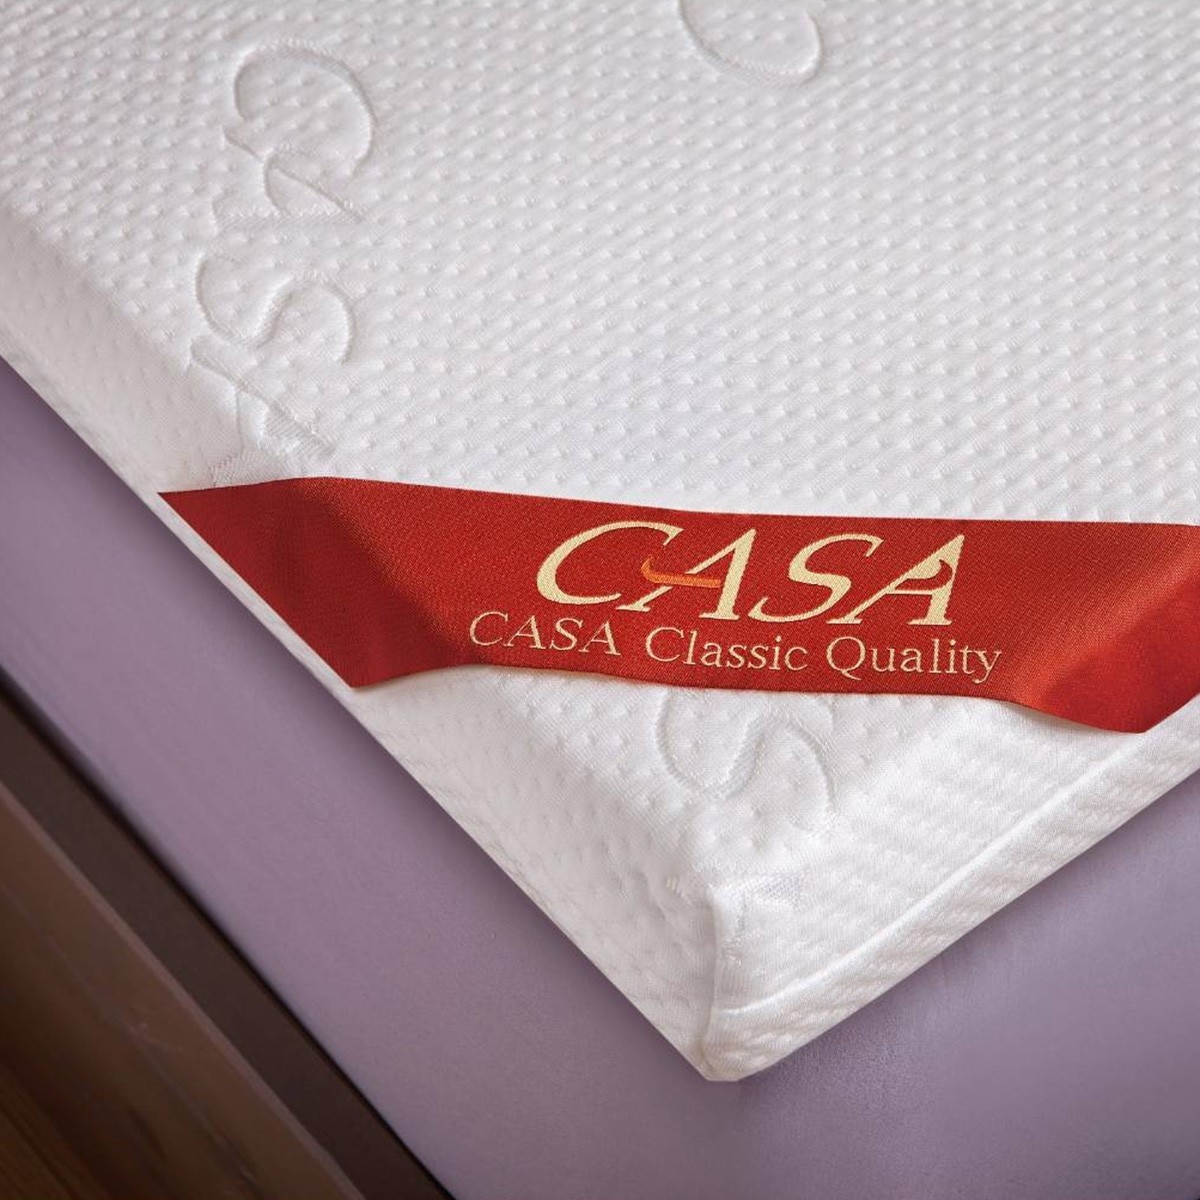 CASA 雙人加大天然乳膠Q彈床墊 183公分 X 190公分 X 7.5公分